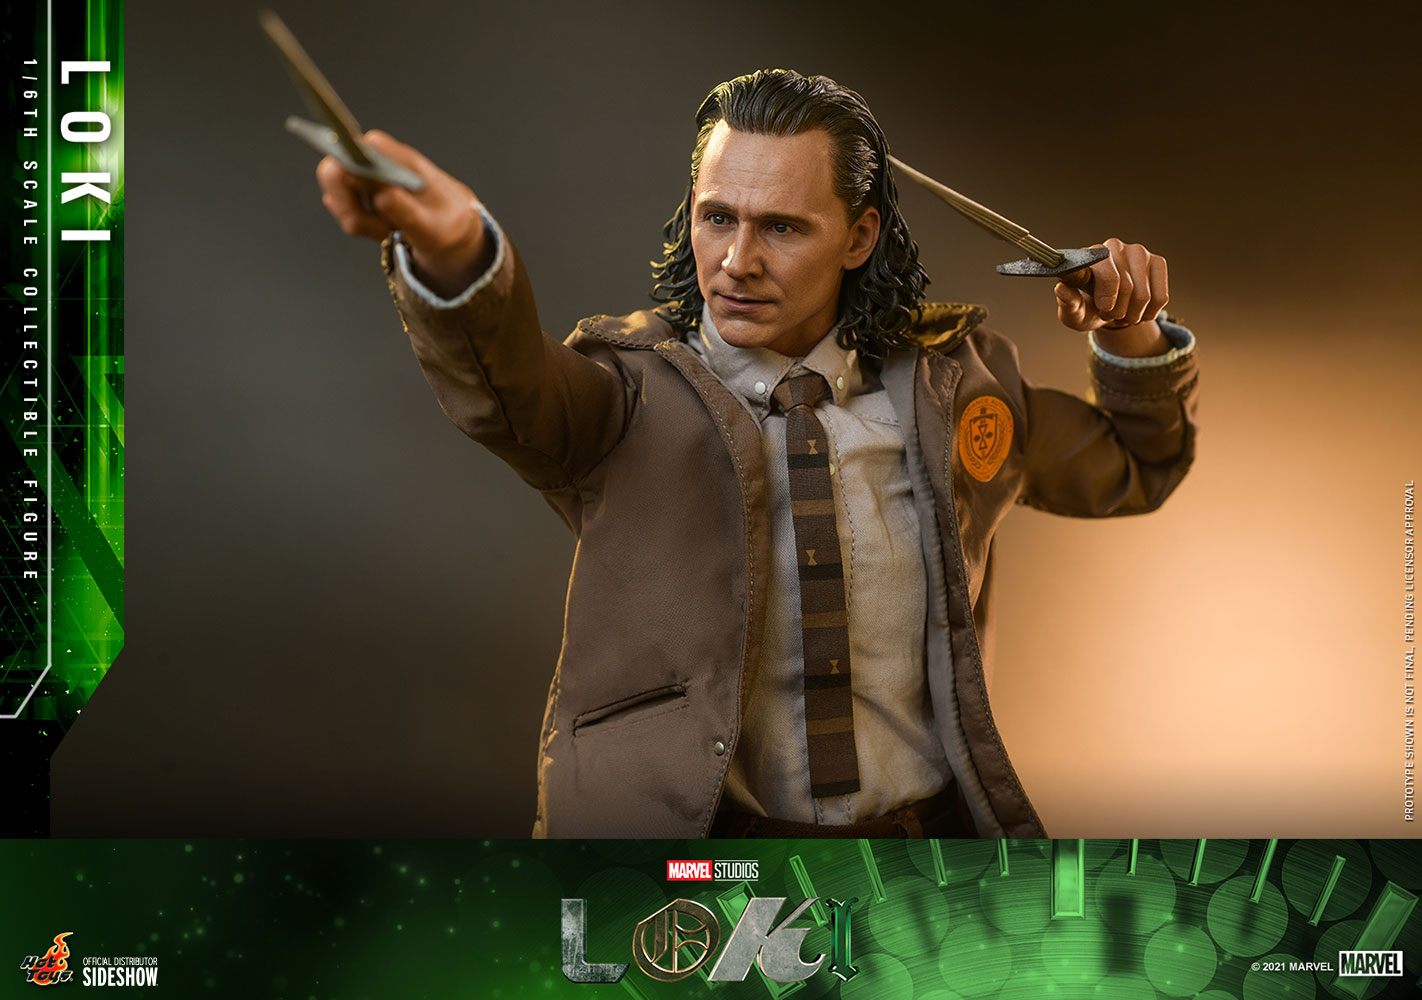  Marvel: Loki - Loki 1:6 Scale Figure  4895228609441